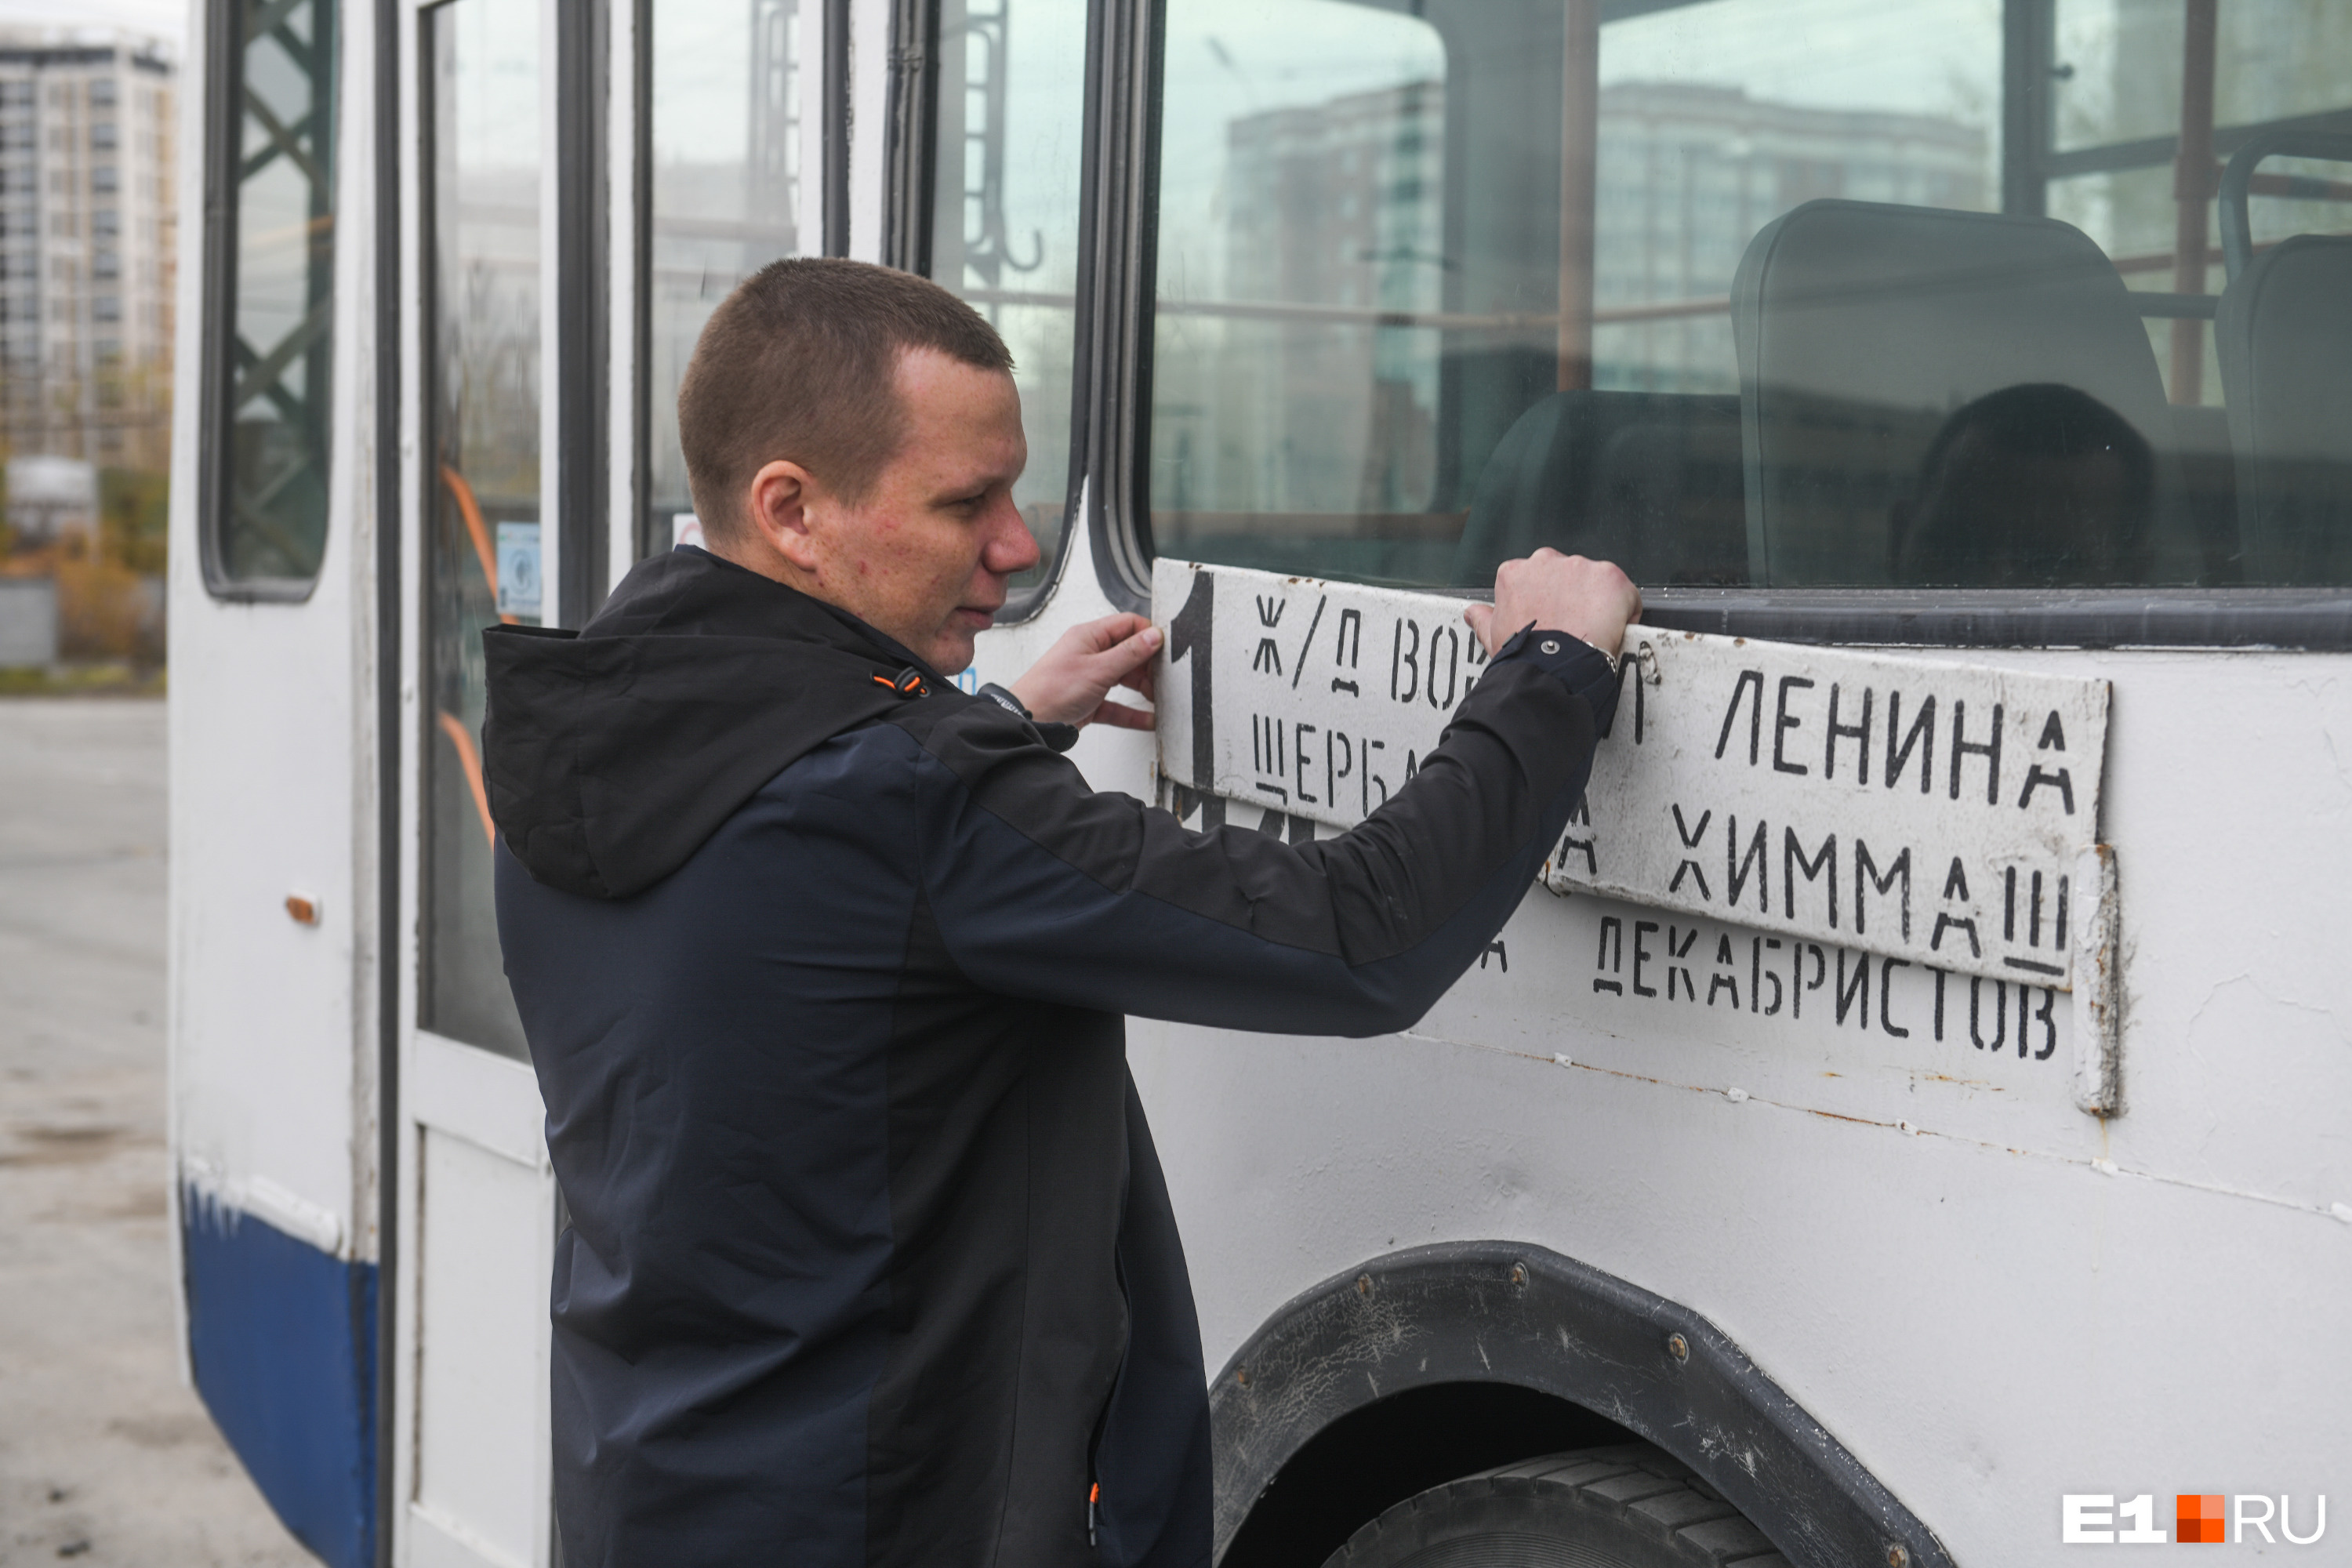 Сергей водит троллейбус маршрута <nobr class="_">№ 1</nobr> (Железнодорожный вокзал — Химмаш)